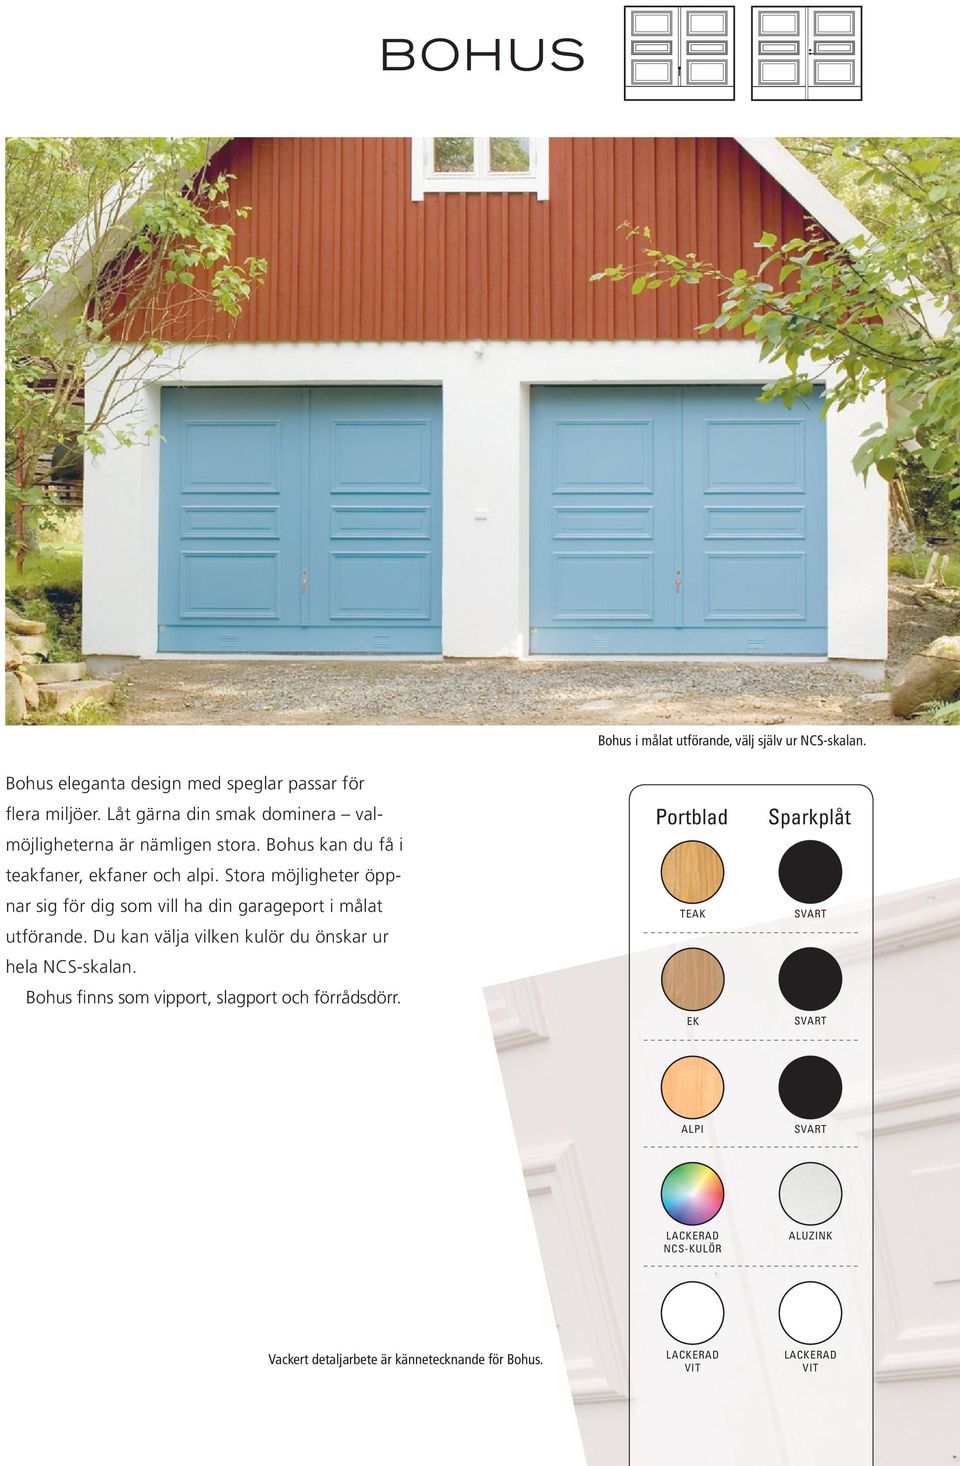 Stora möjligheter öppnar sig för dig som vill ha din garageport i målat utförande. Du kan välja vilken kulör du önskar ur hela NCS-skalan.